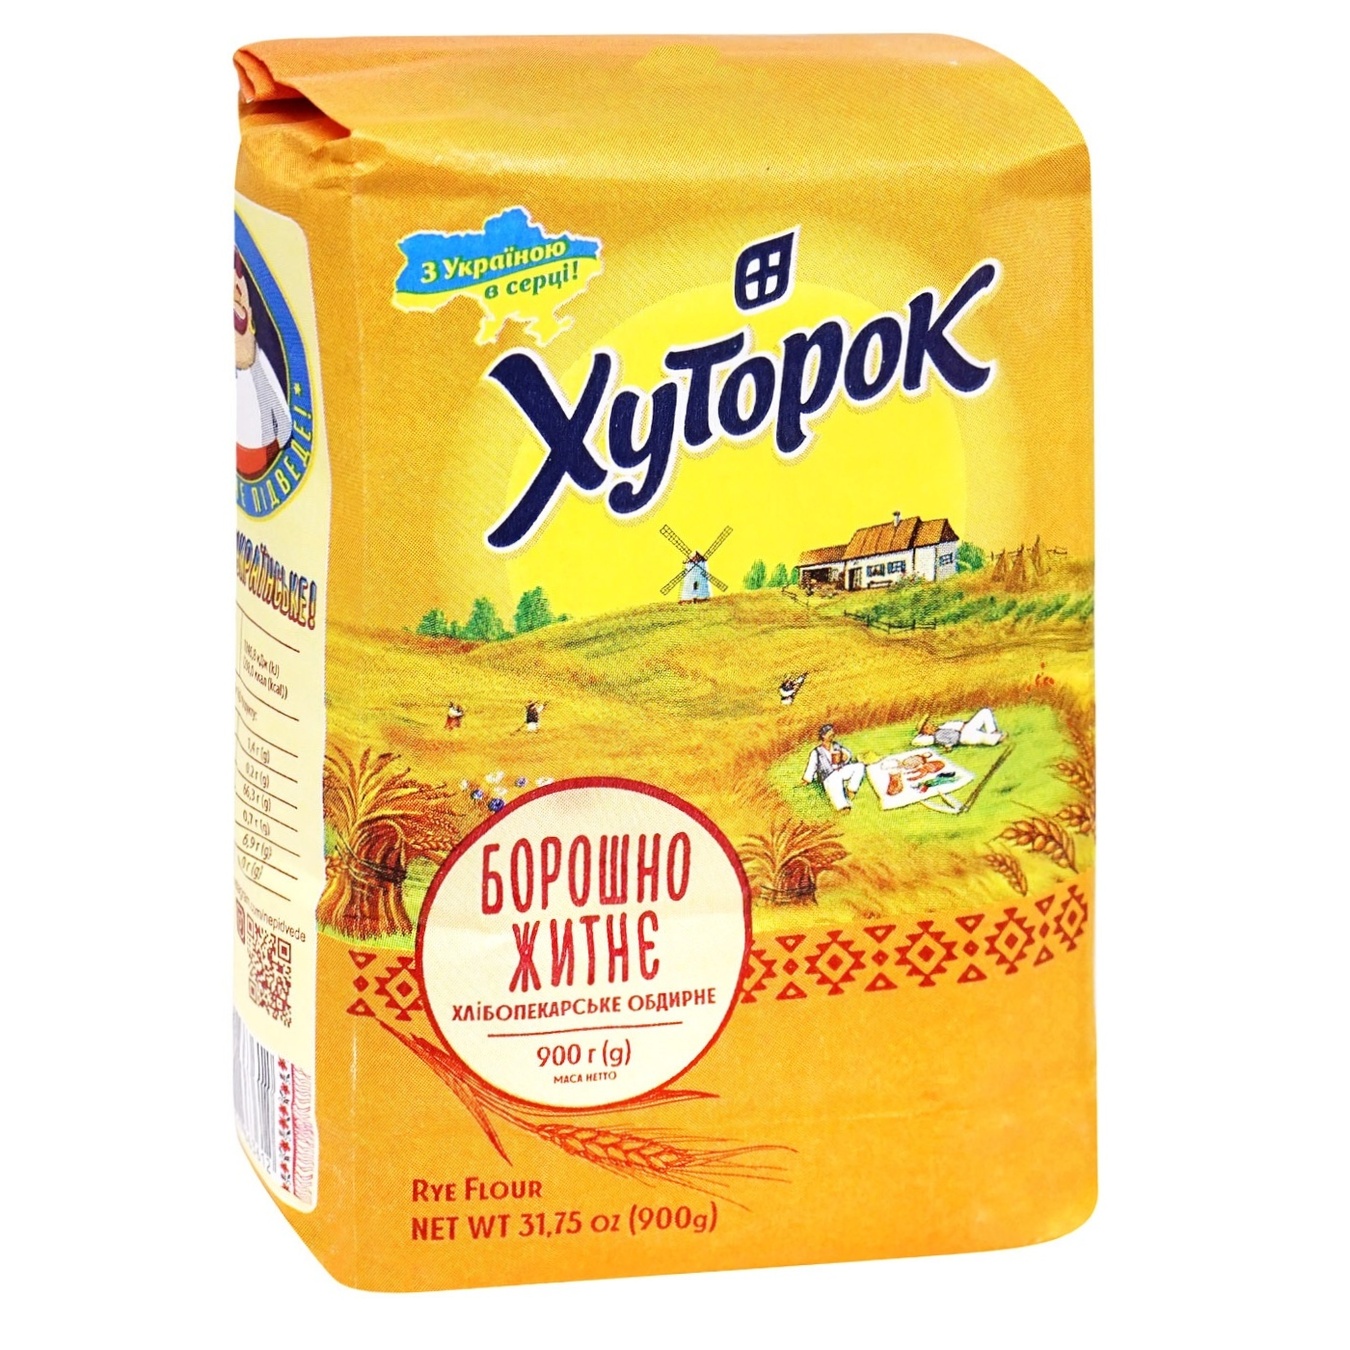 Khutorok rye flour 900g 2